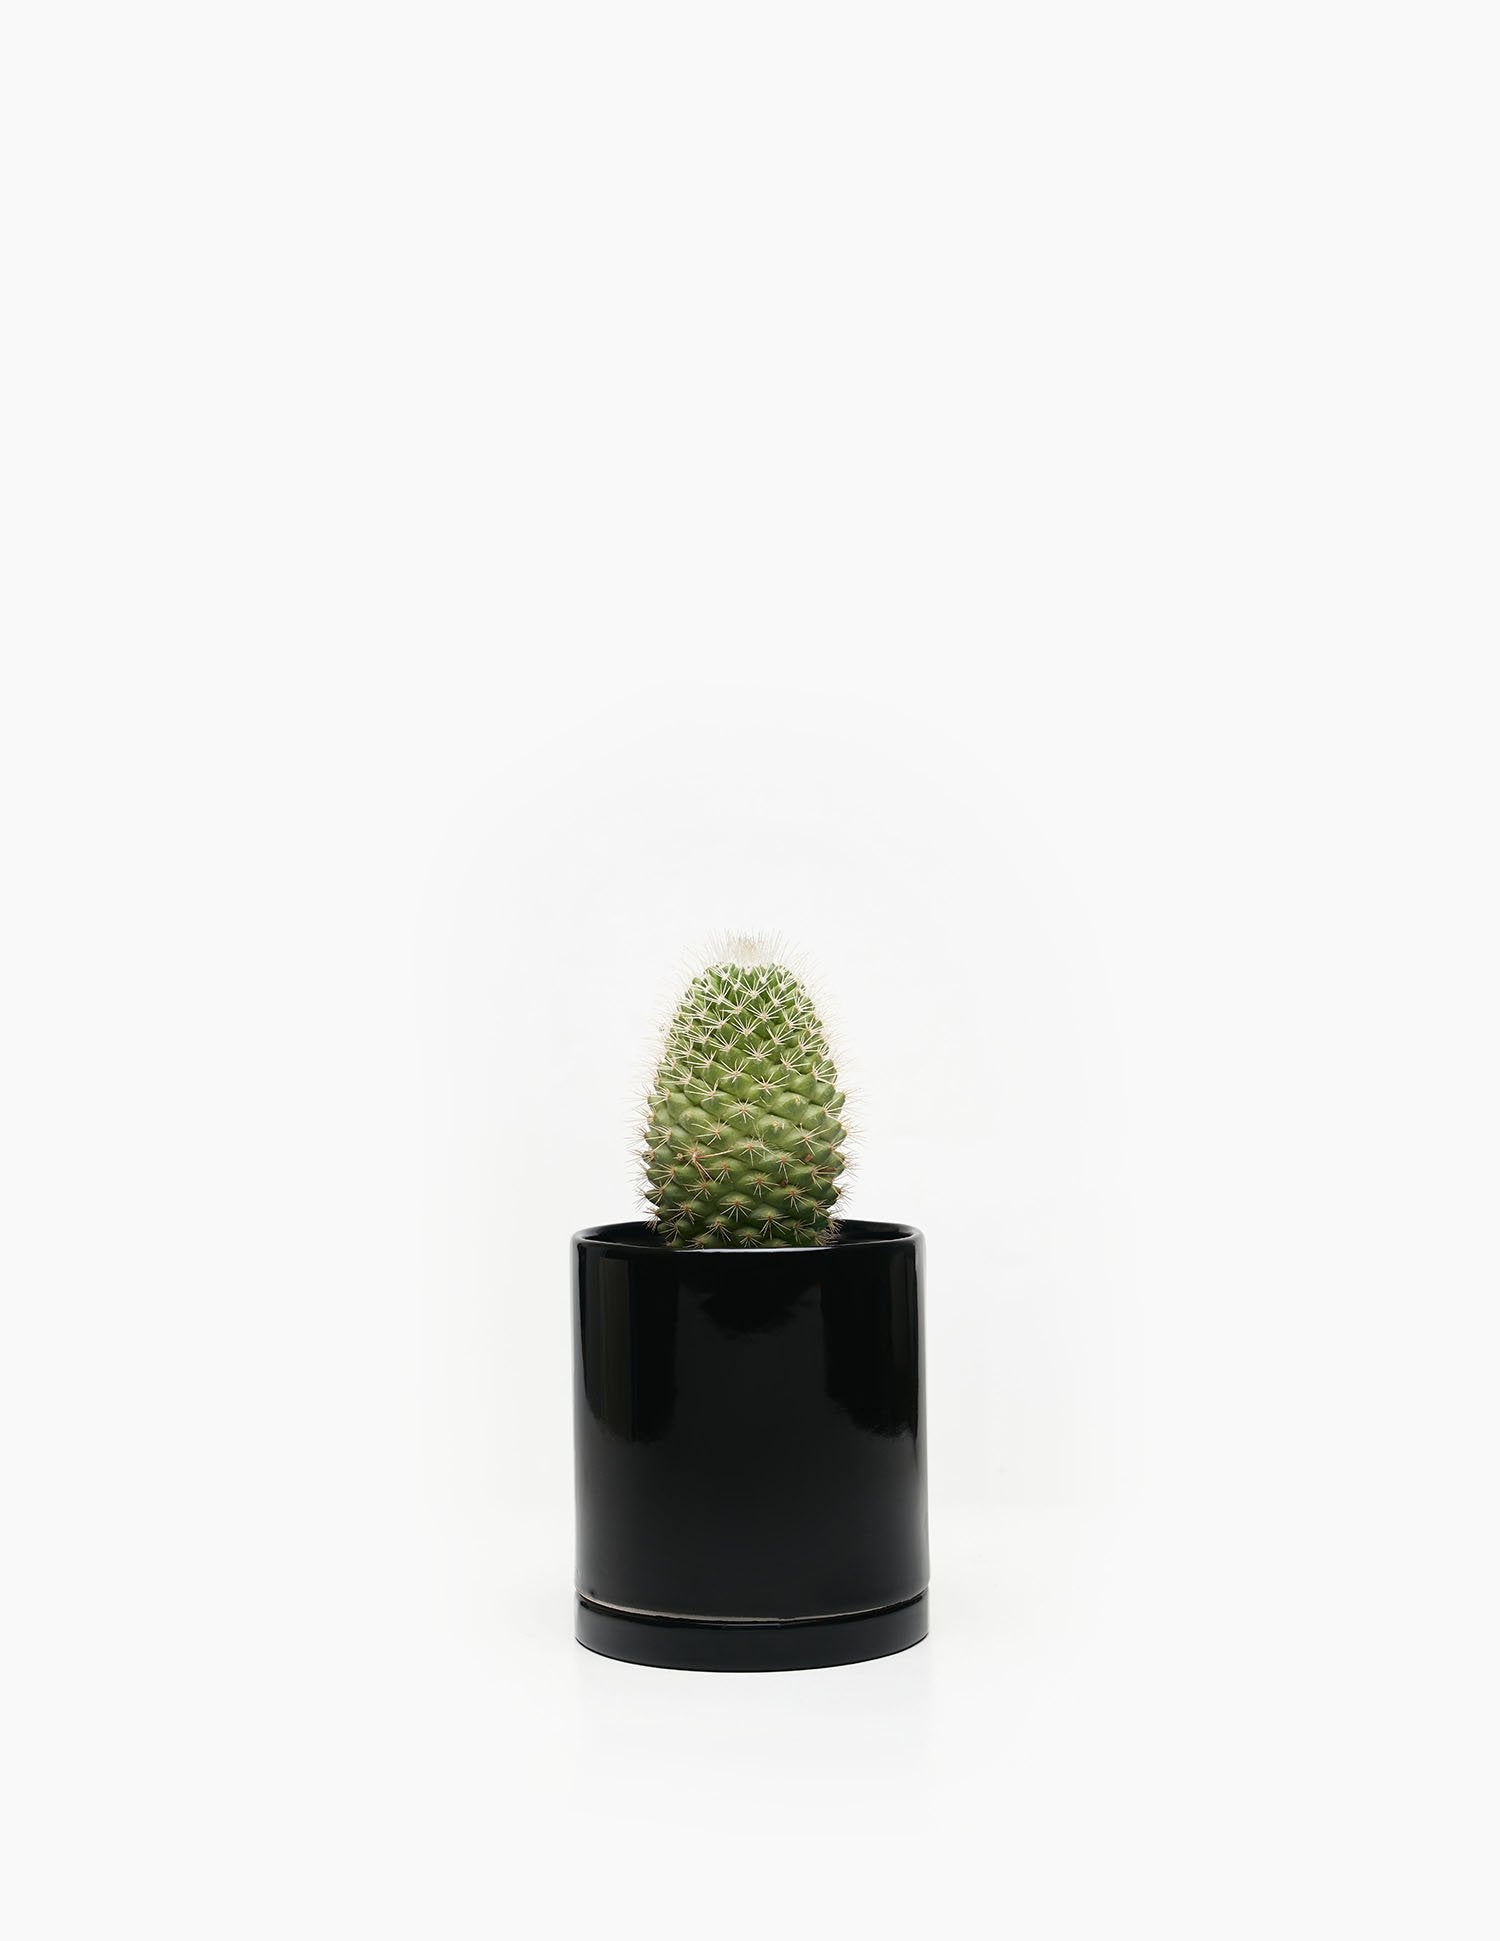 Planta Cactus en maceta de cerámica | Compra plantas online | Balcón